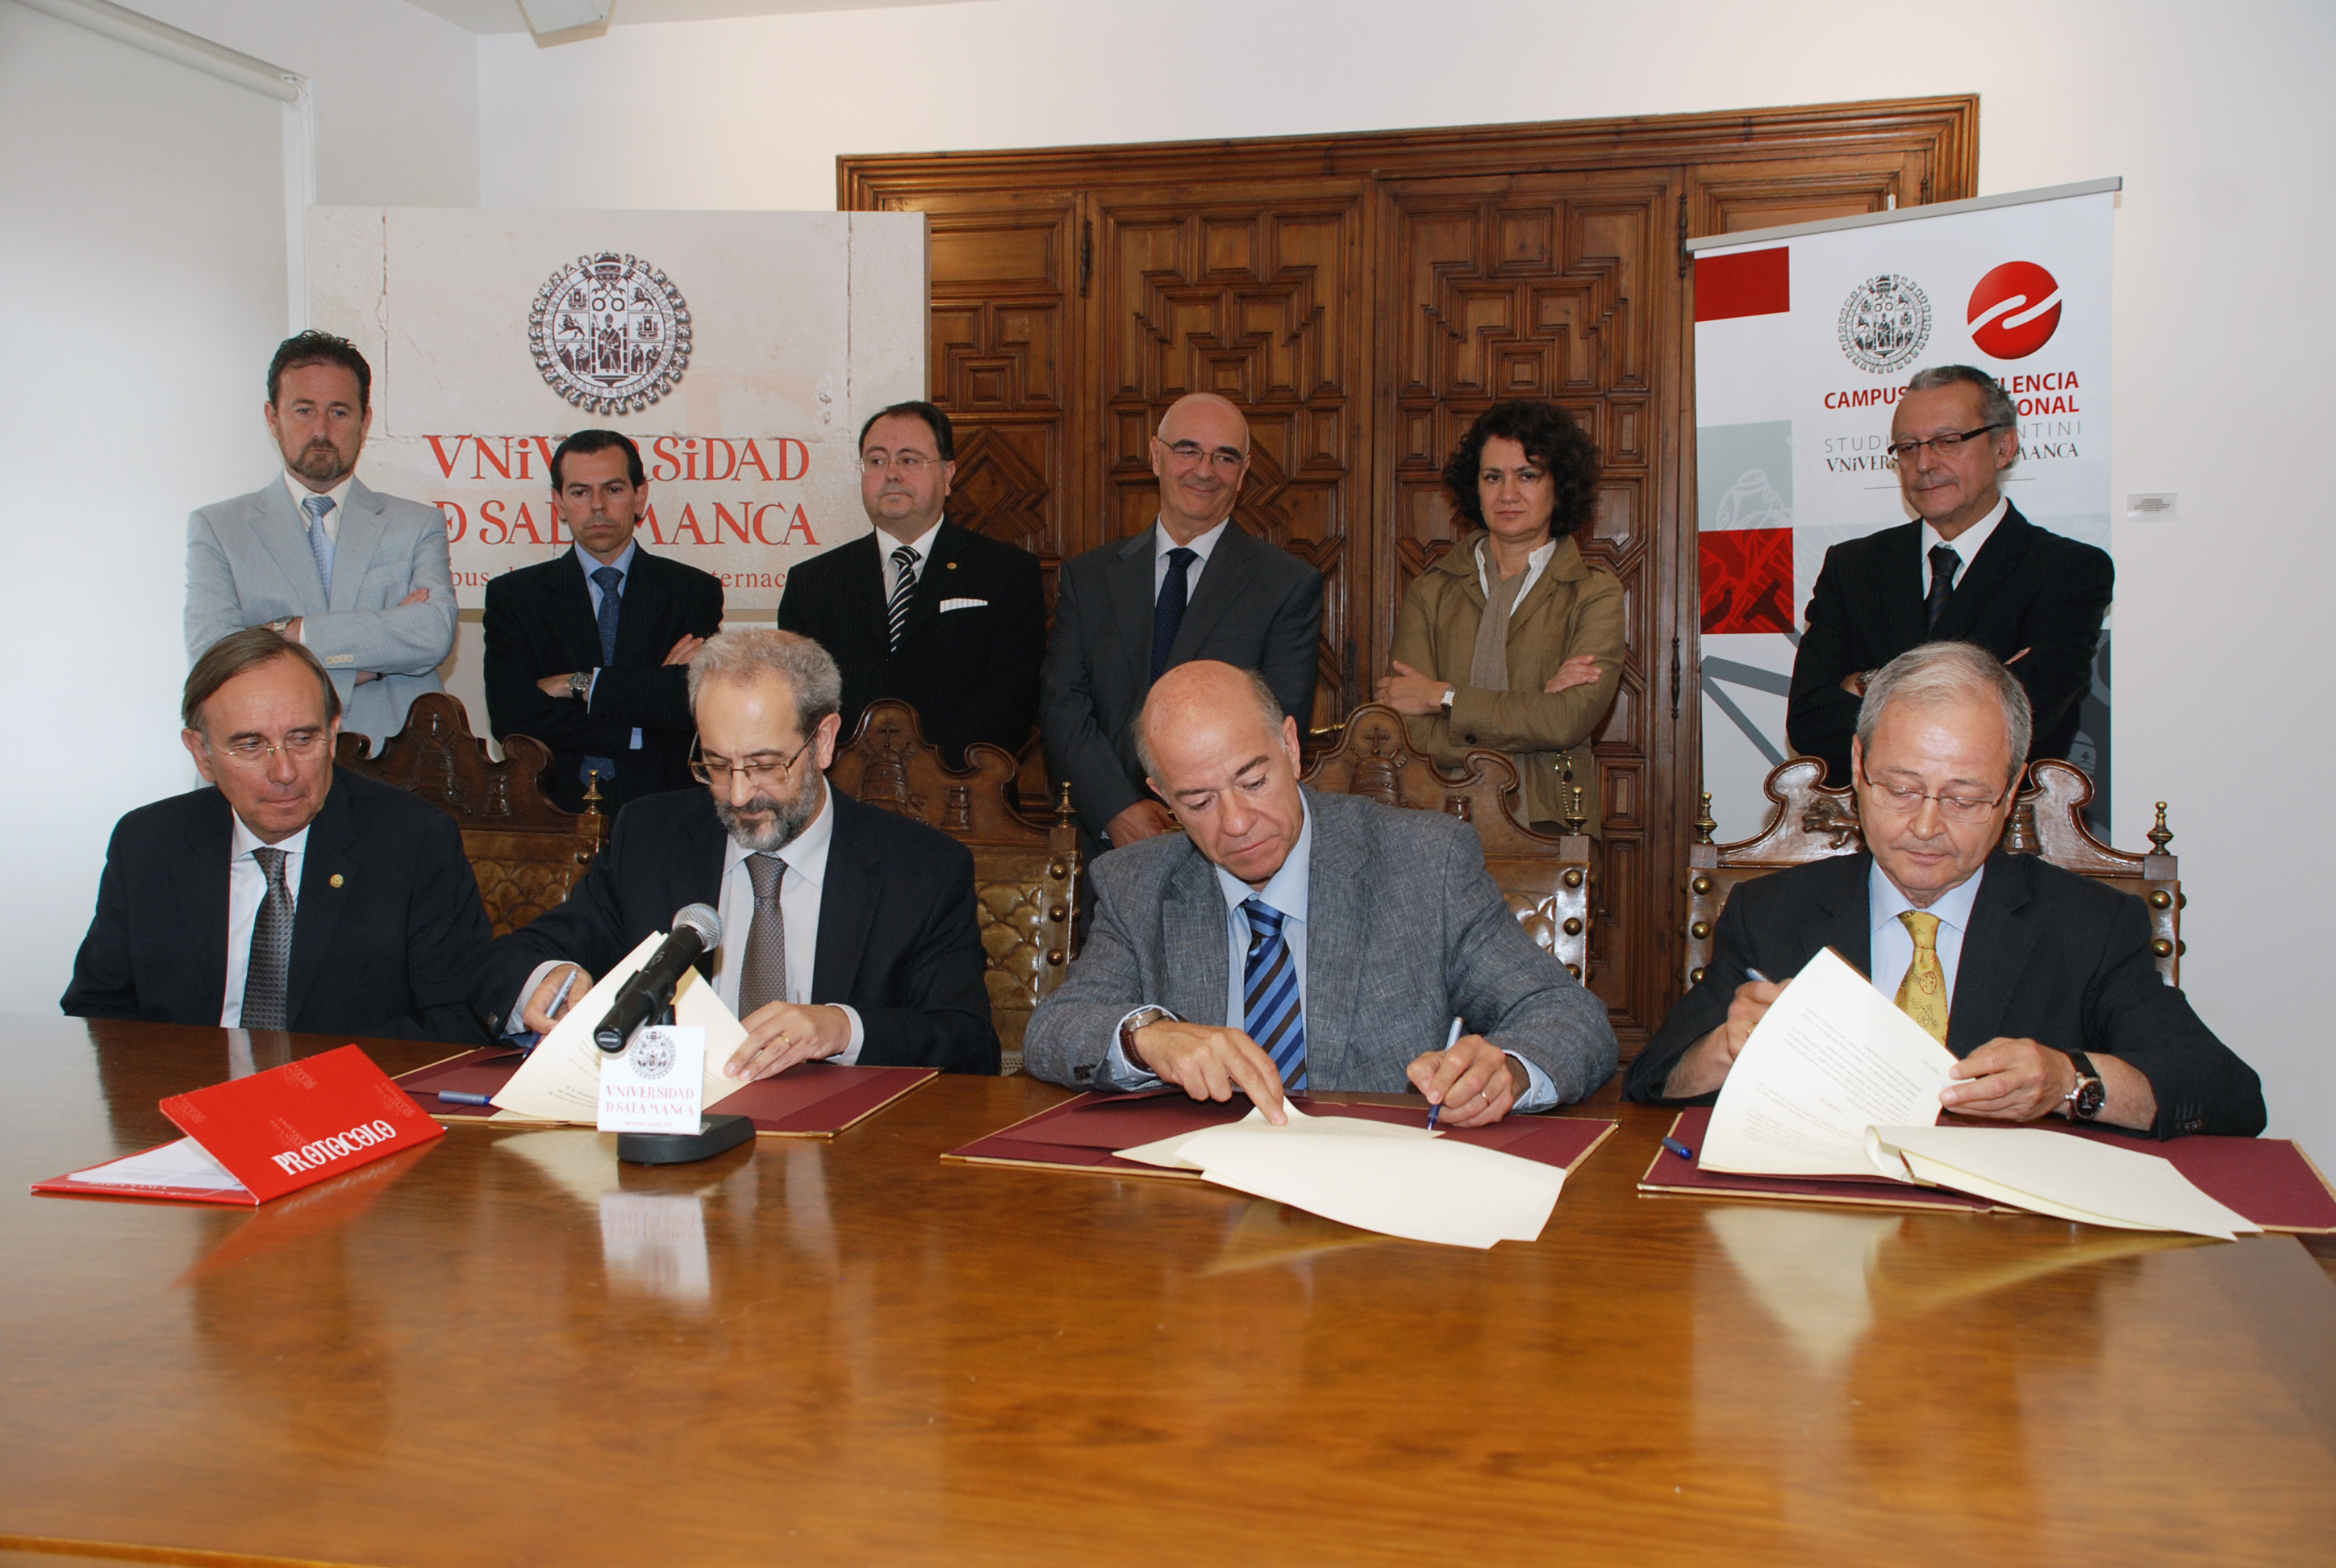 La Universidad de Salamanca y la empresa INIBSA suscriben un convenio de colaboración